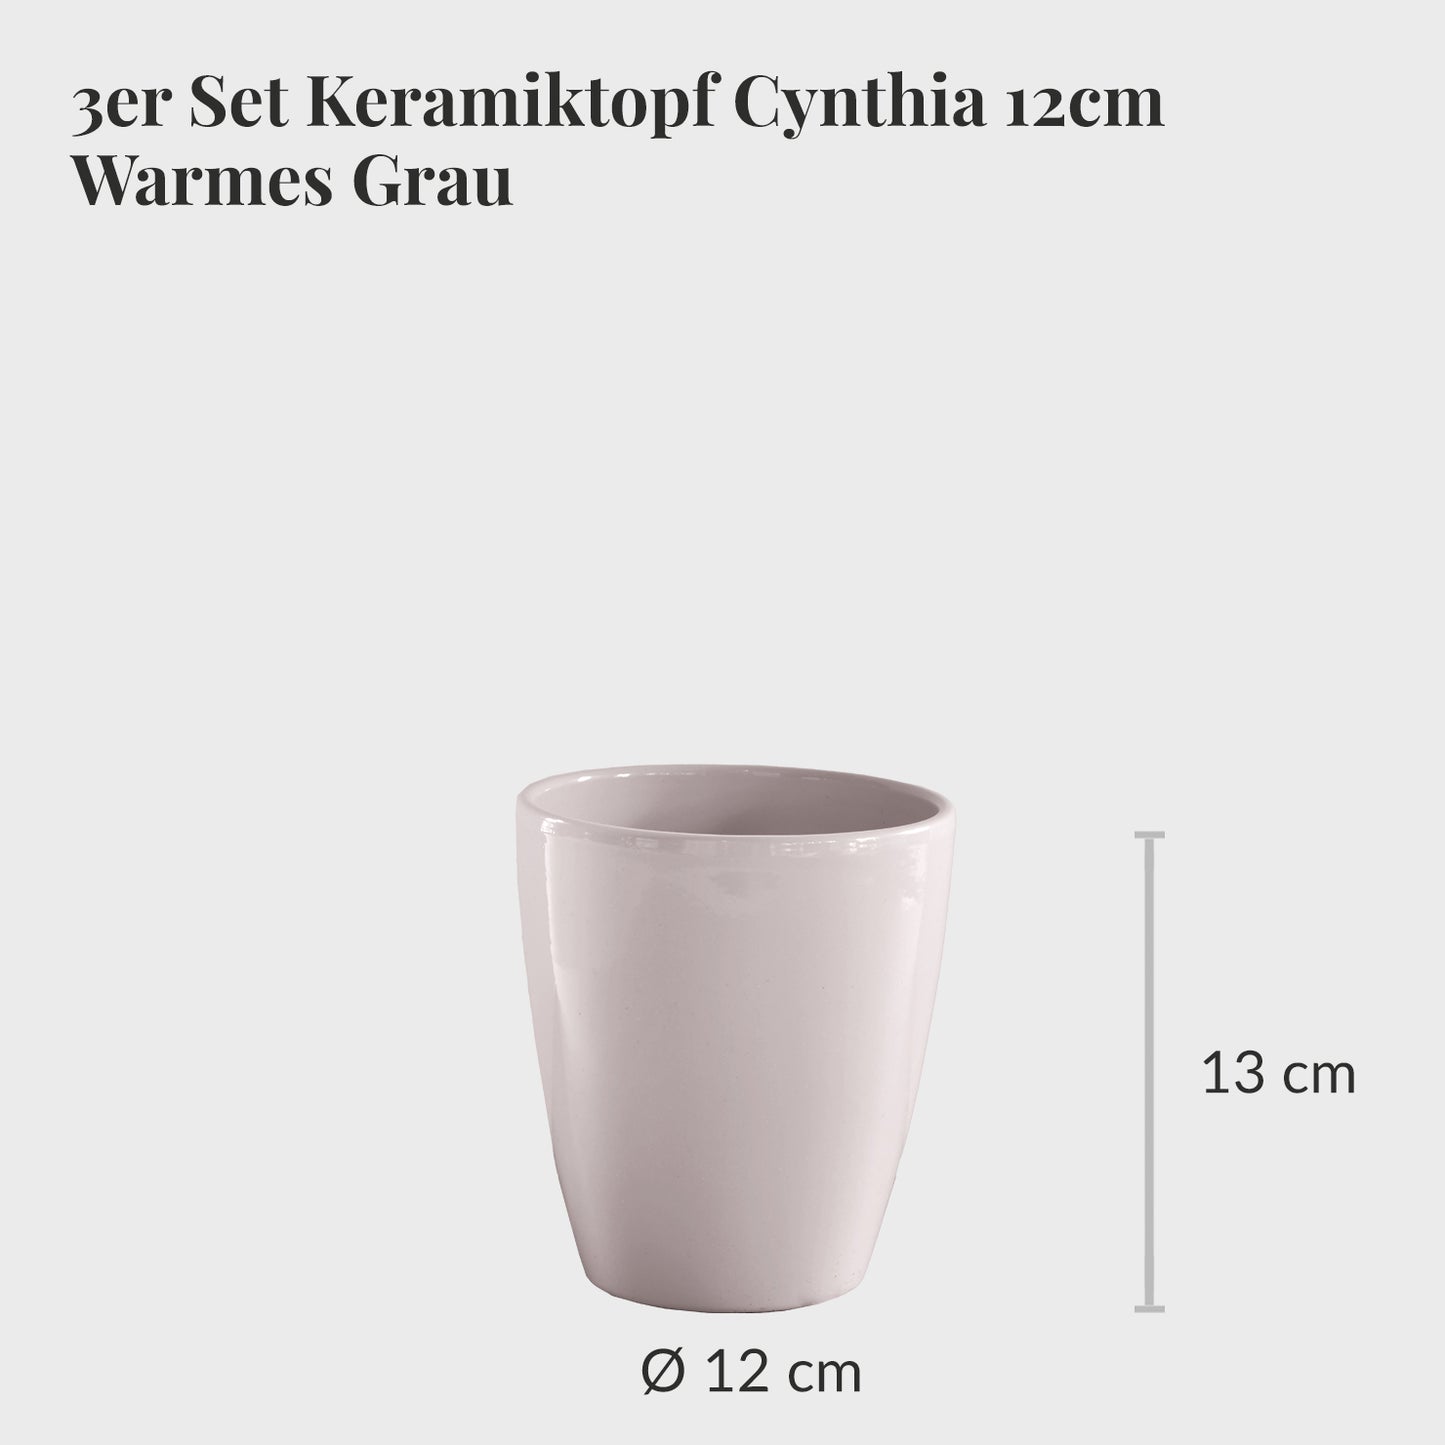 3er Set Keramiktopf Cynthia 12cm Warmes Grau